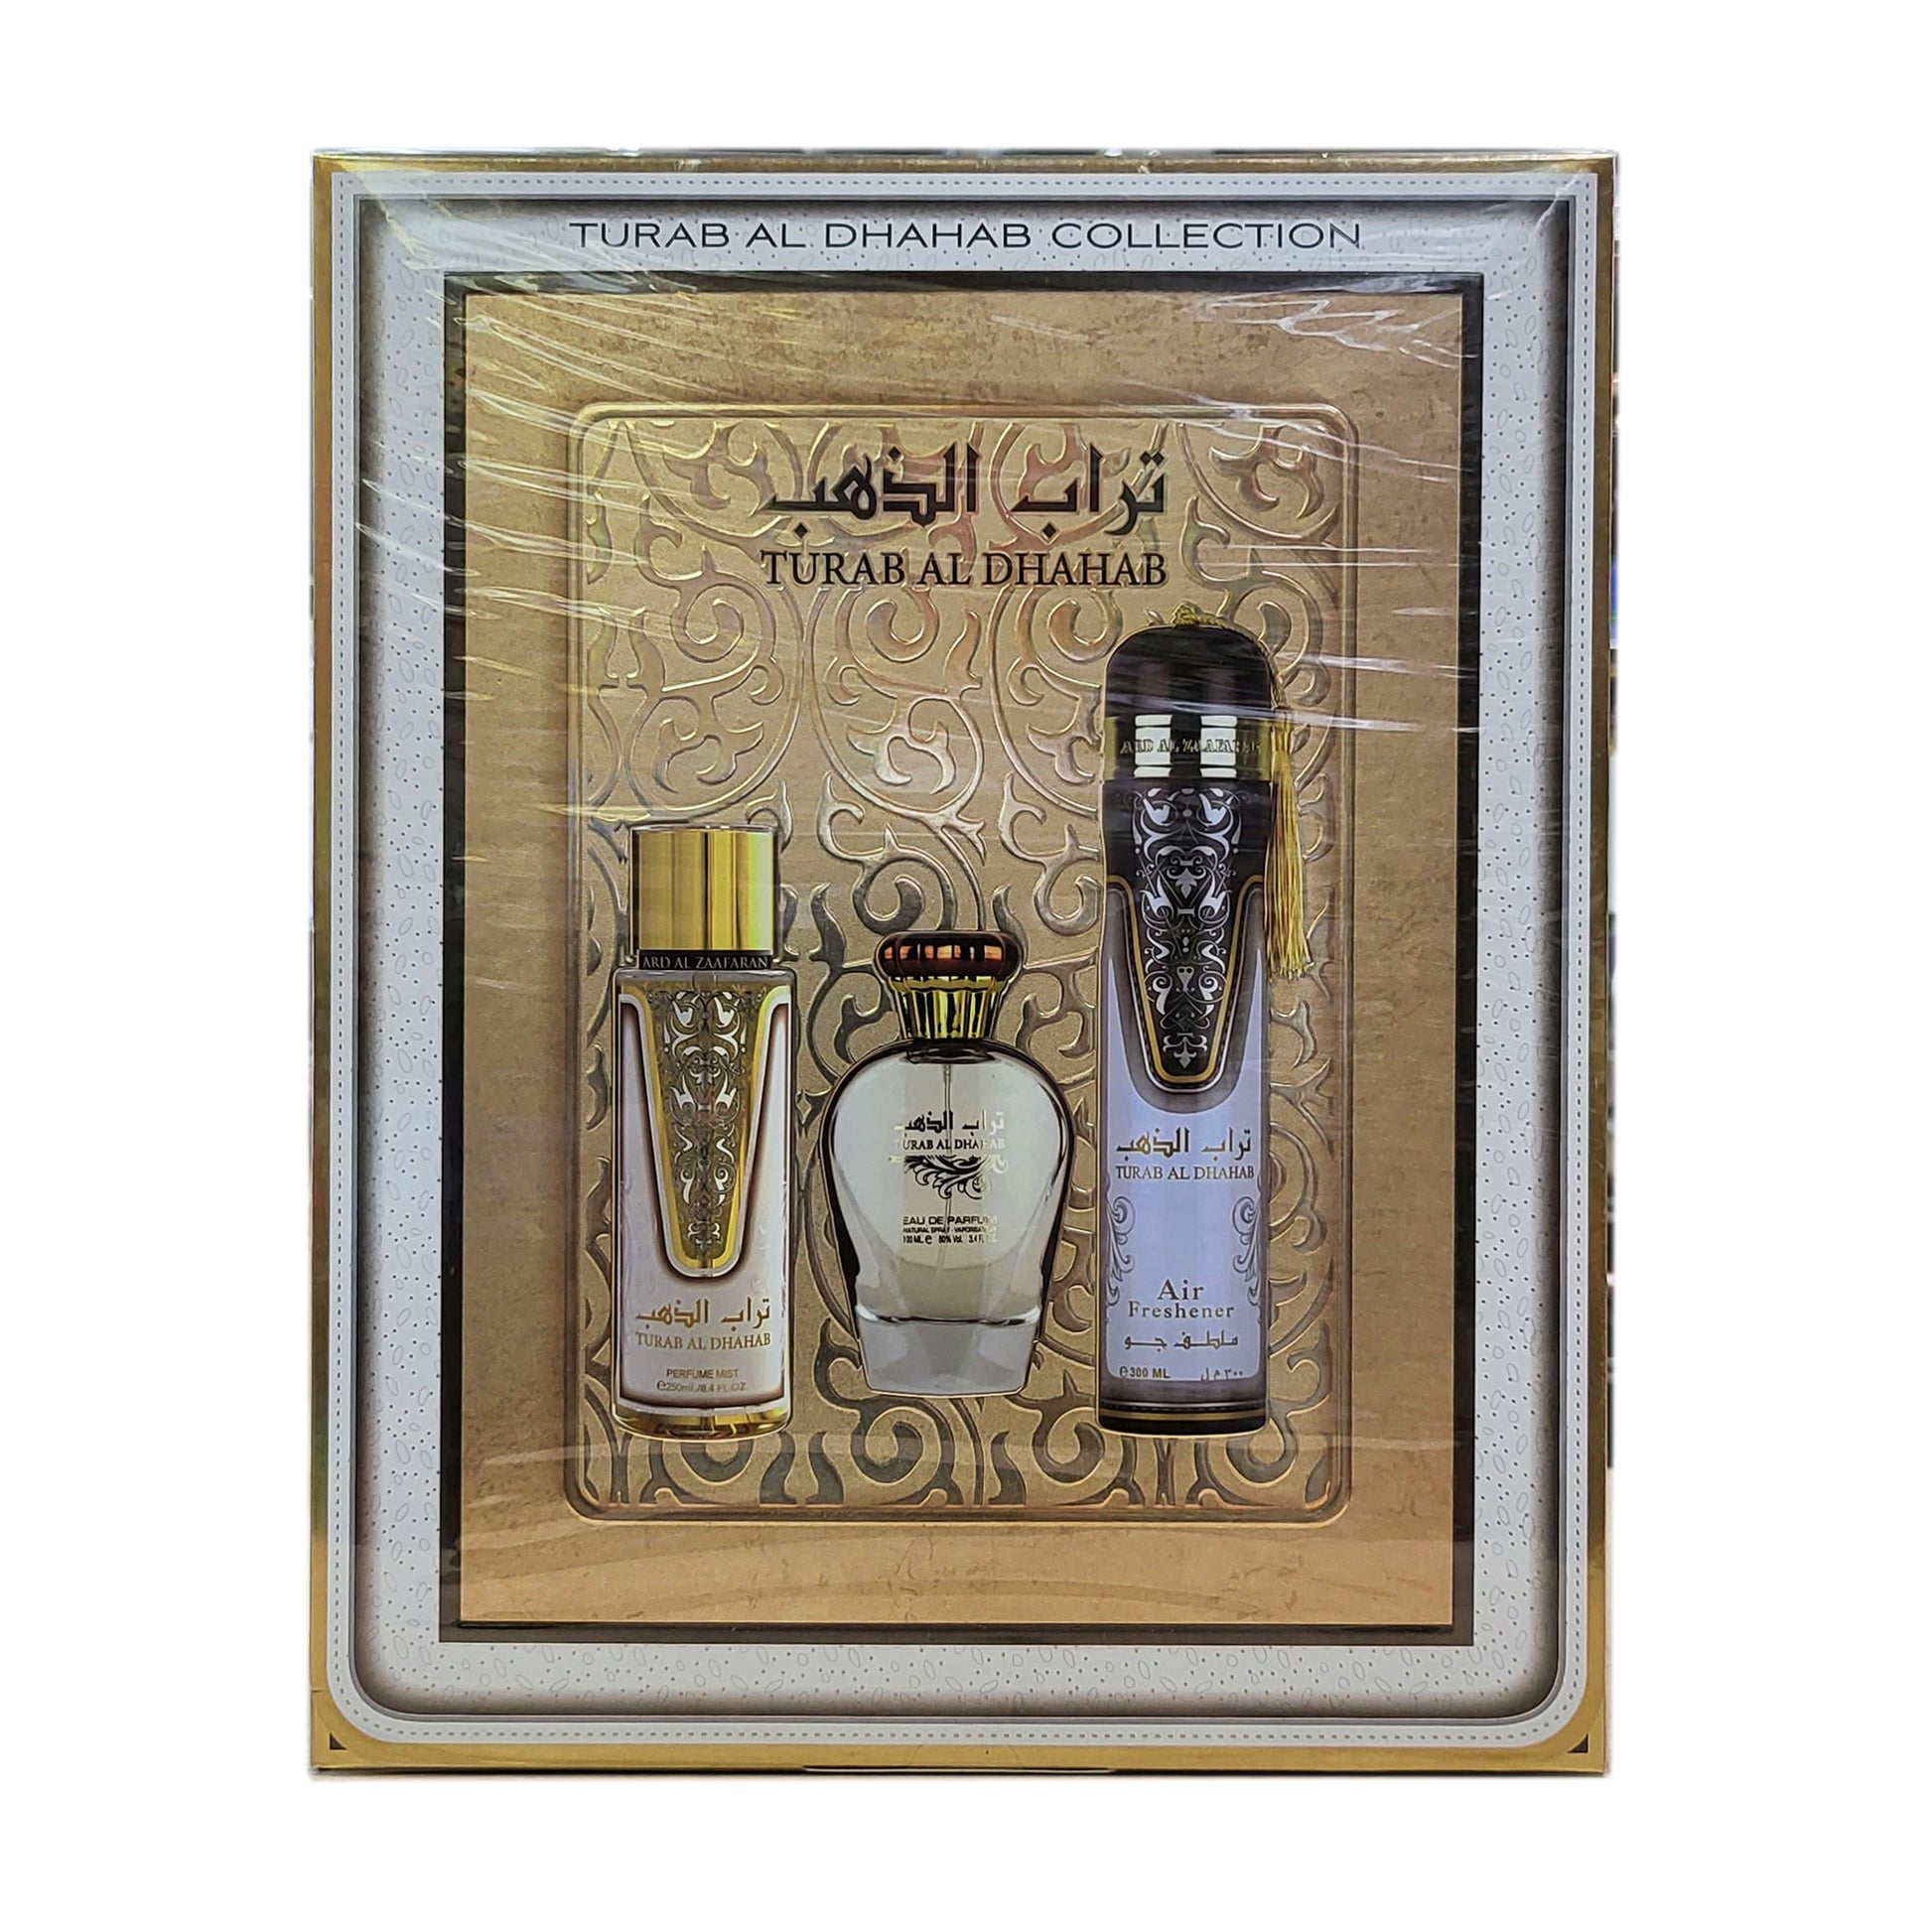 Turab al dhahab gift collection